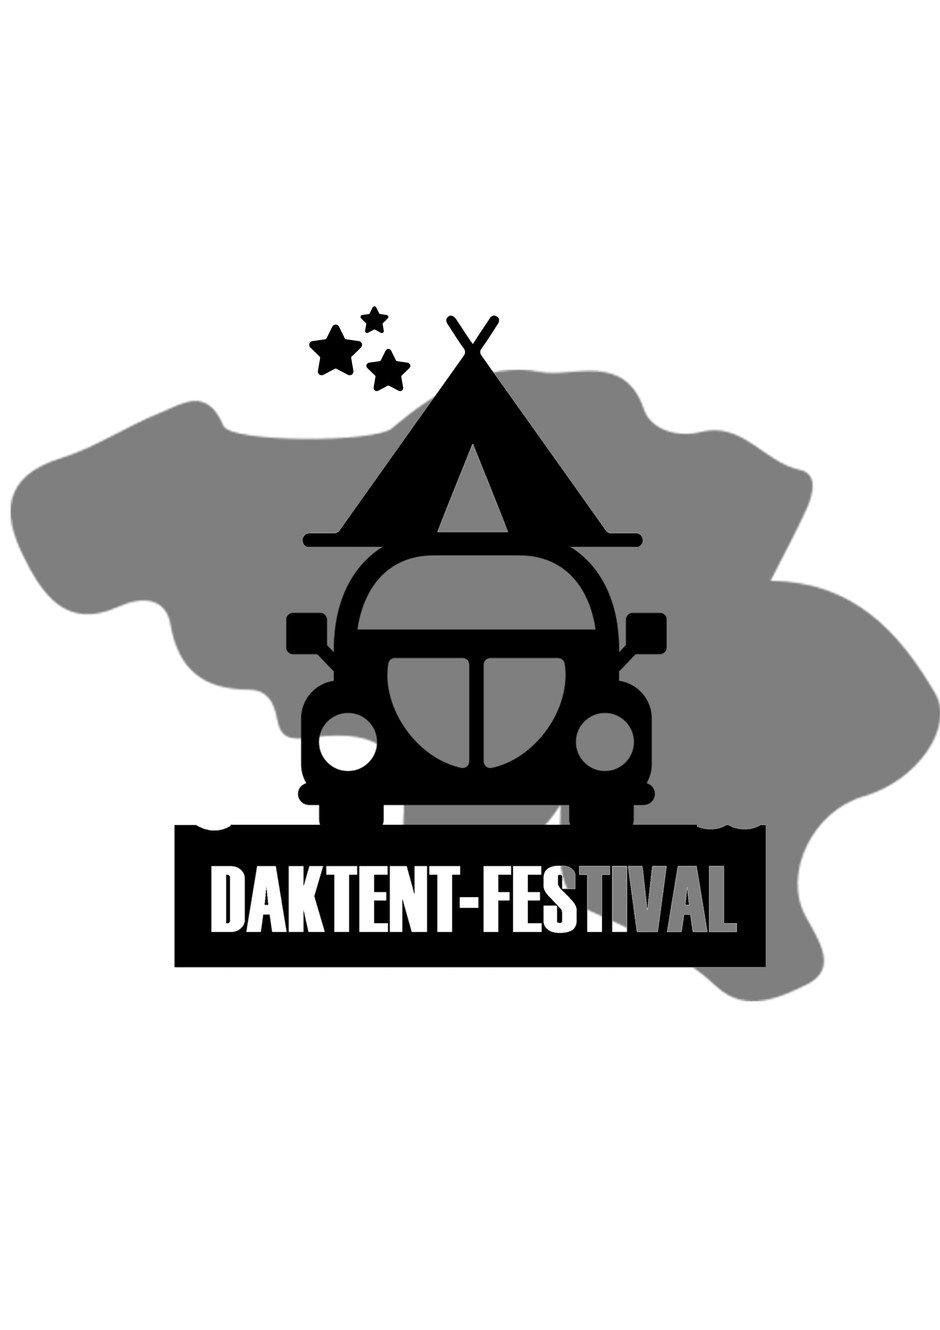 www.daktentenfestival.be